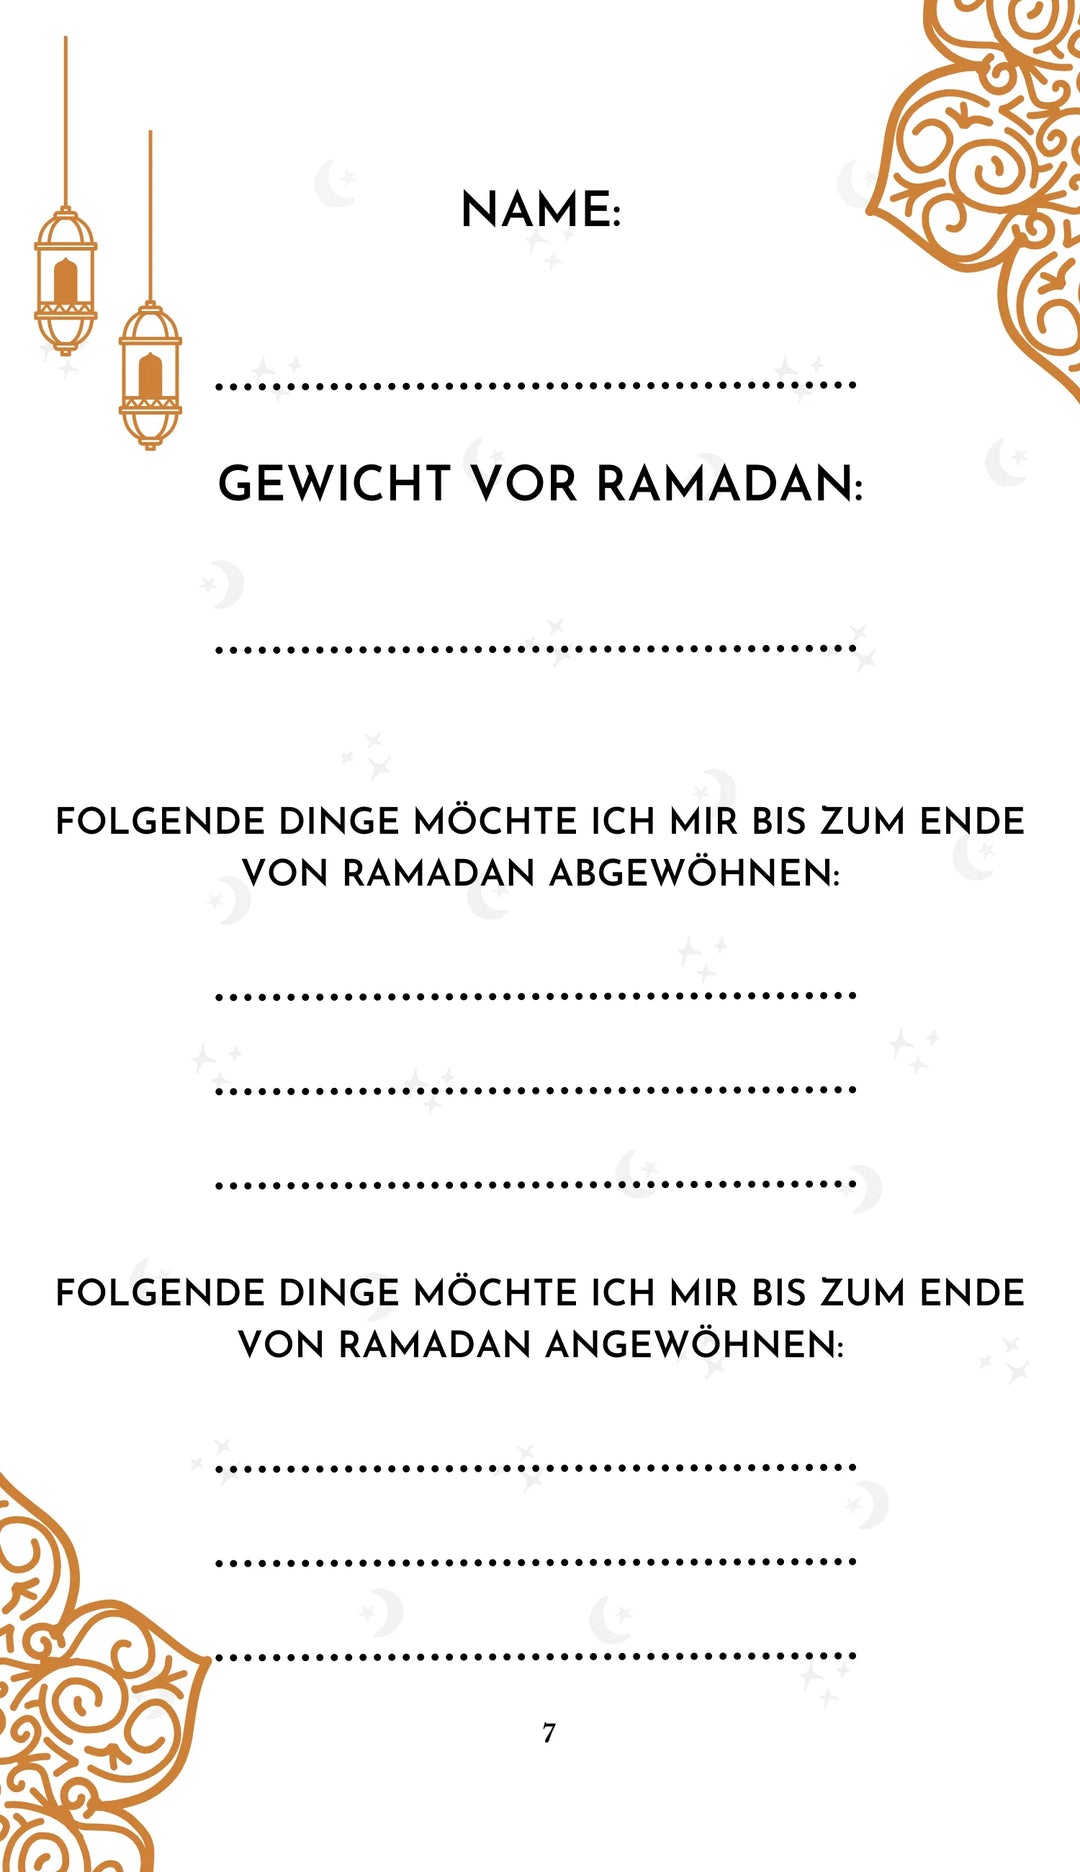 Votre compagnon du Ramadan - livre de poche 